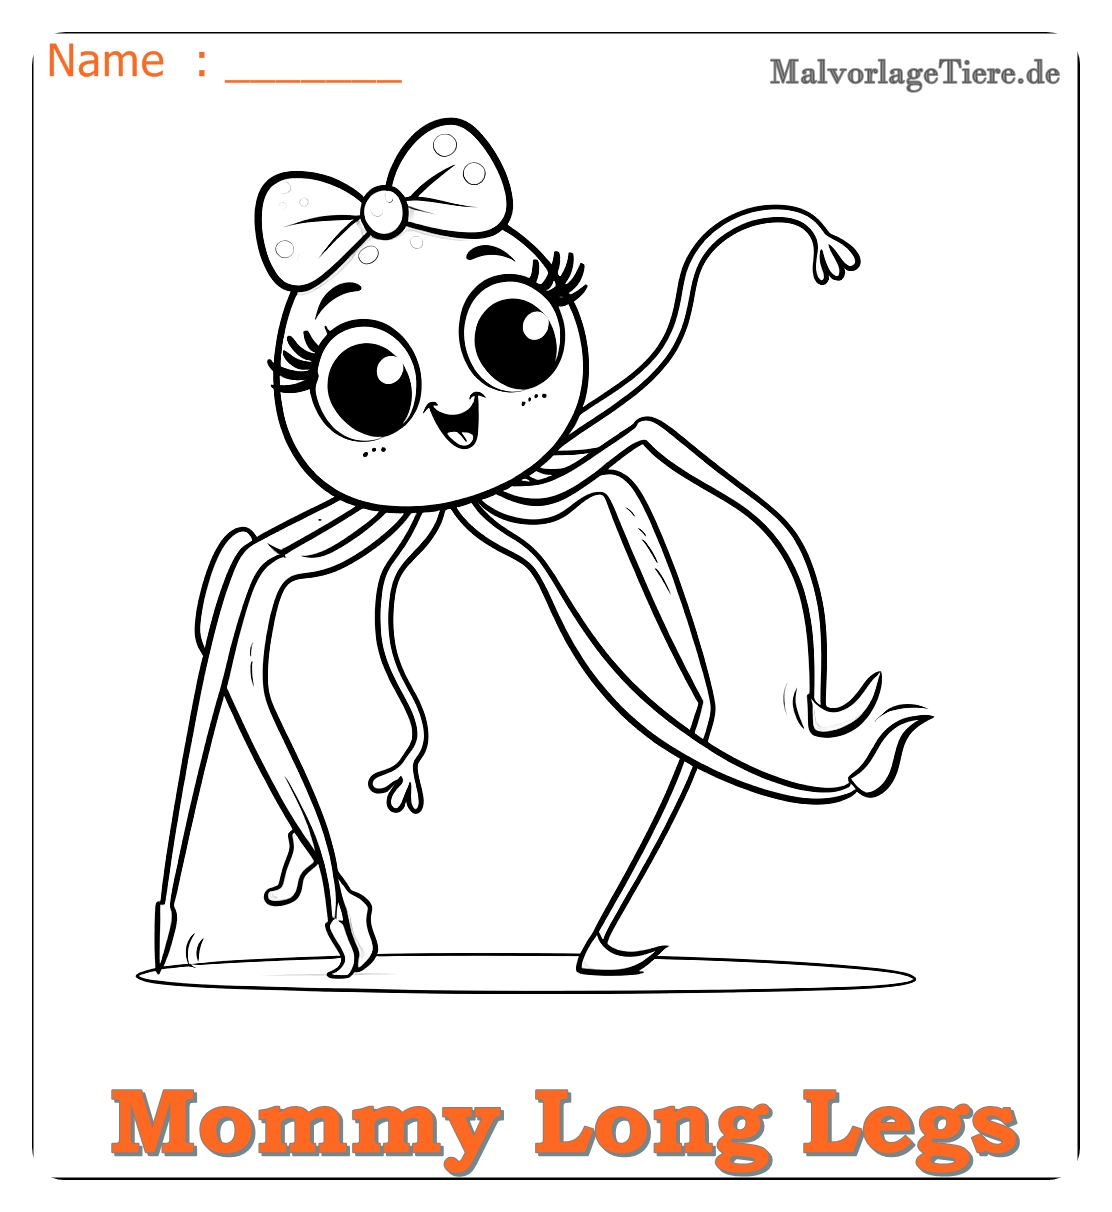 mommy long legs ausmalbilder 04 by malvorlagetiere.de